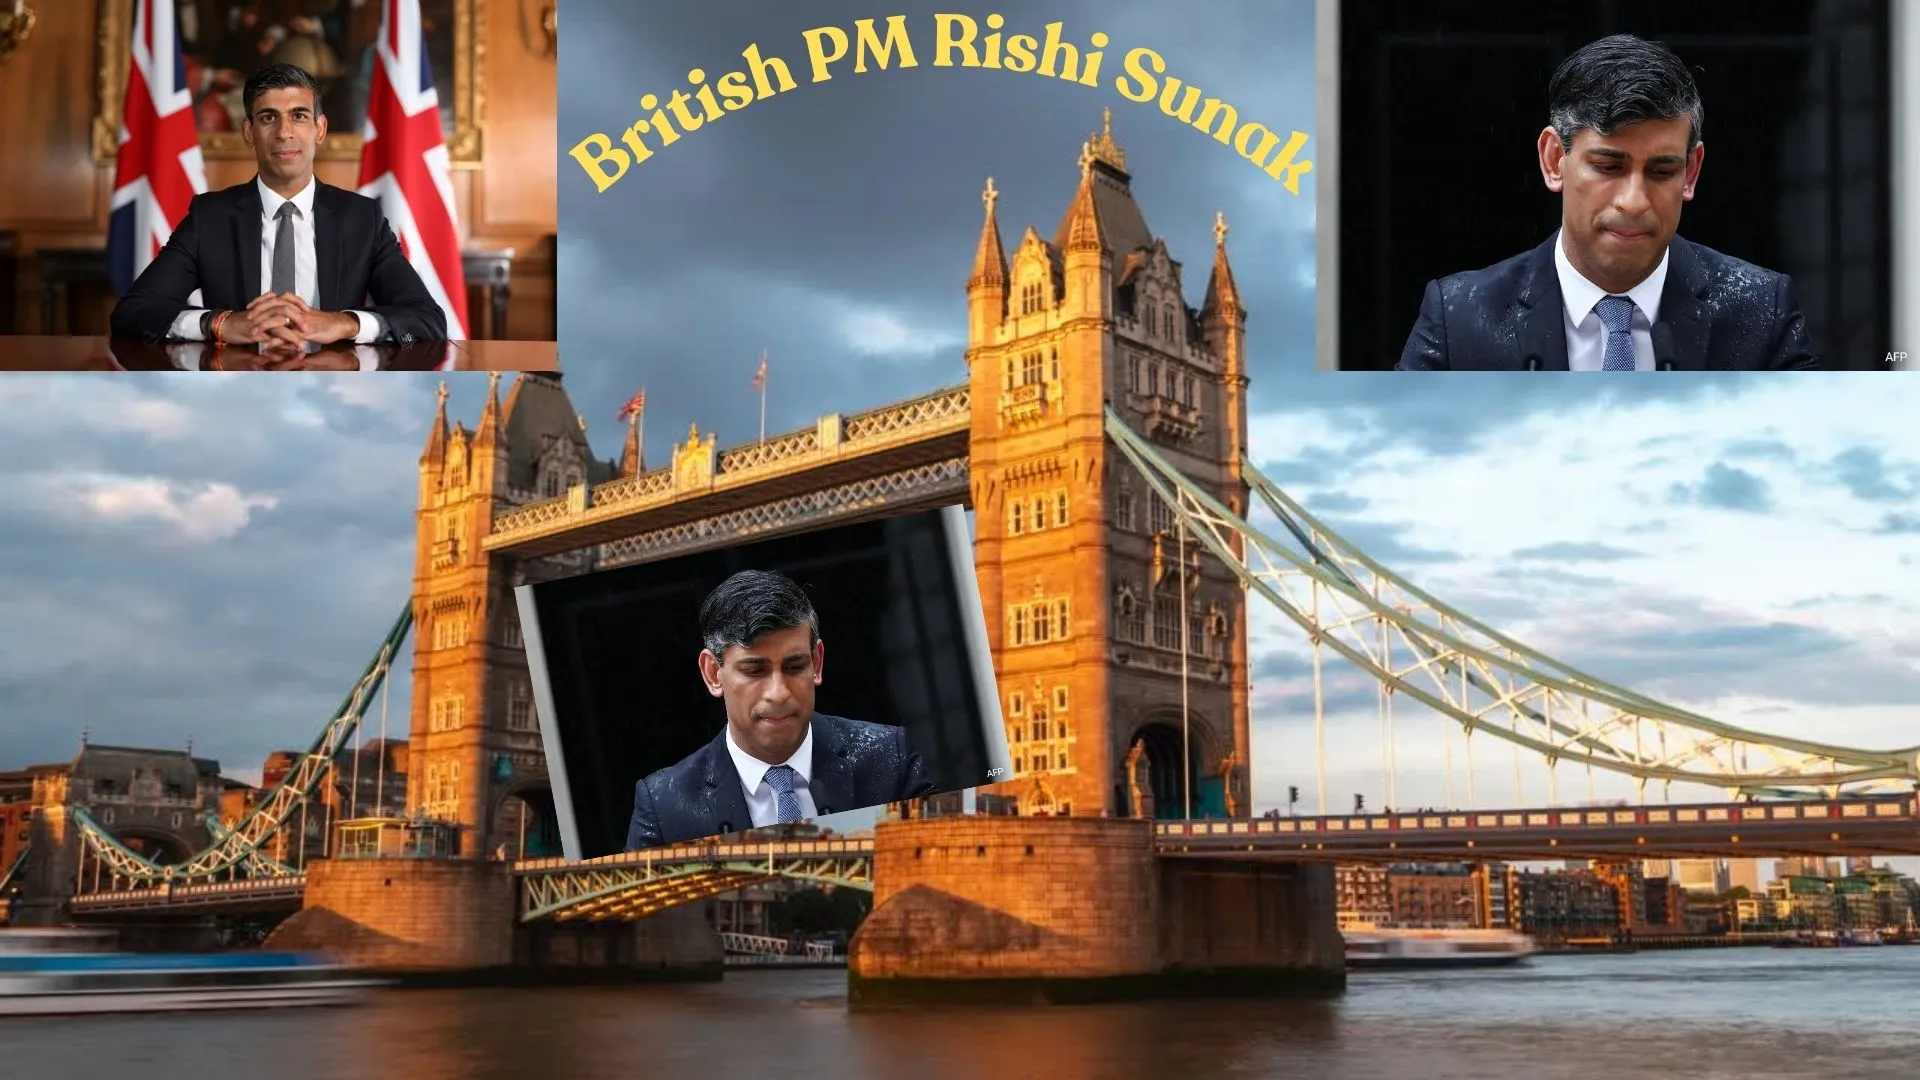 British PM Rishi Sunak